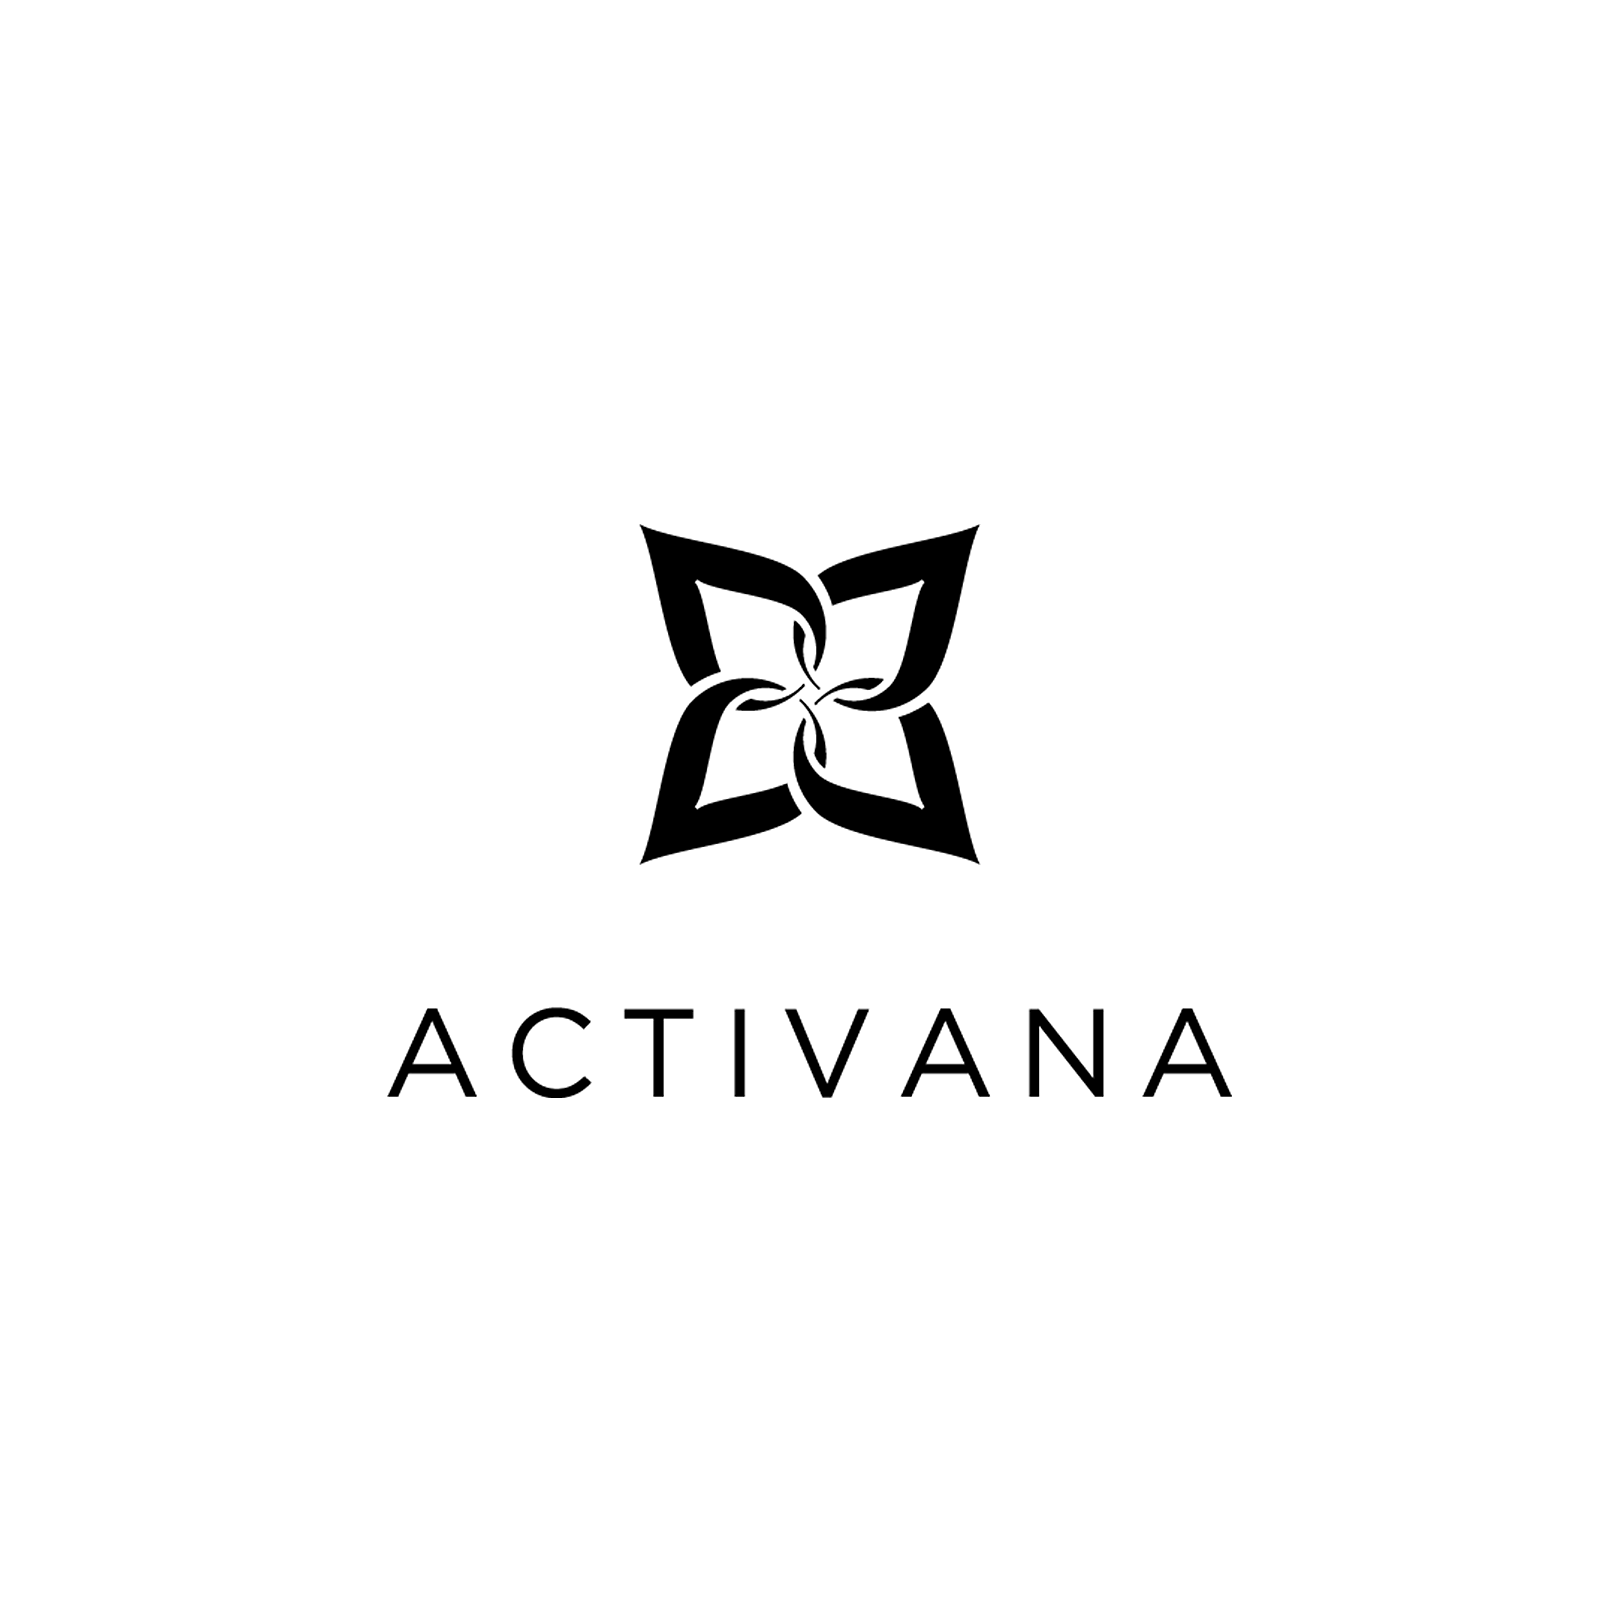 Activana-1-CMYK.png